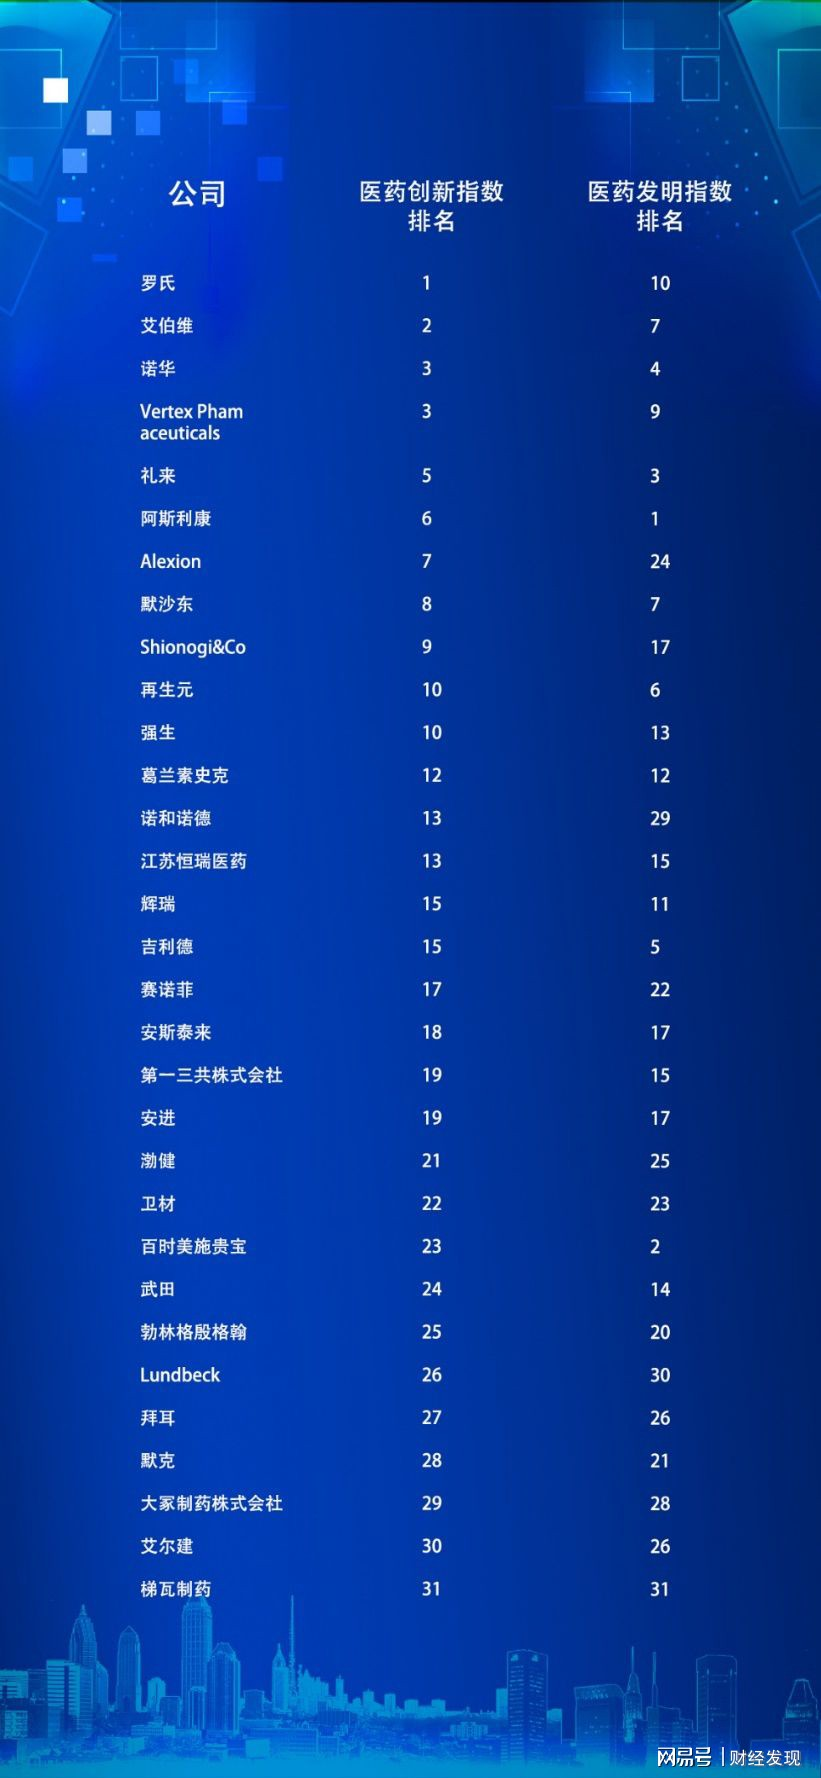 2020<font color="red">医药</font>创新<font color="red">指数</font>排行榜，恒瑞成为中国唯一上榜企业，全球第13